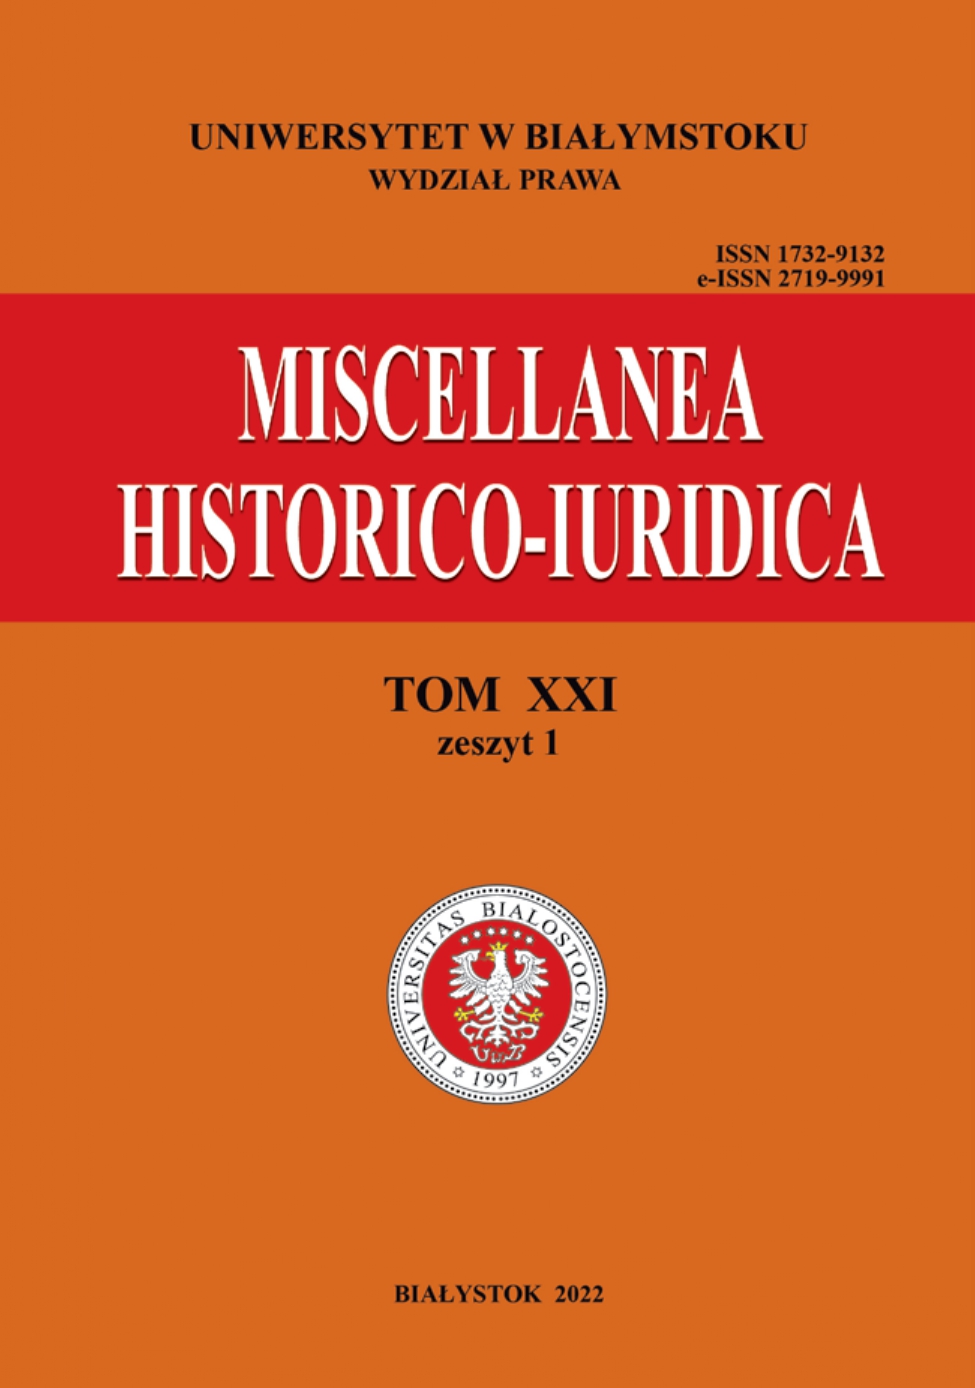 					View Vol. 21 No. 1 (2022): Miscellanea Historico-Iuridica Vol. XXI No. 1
				